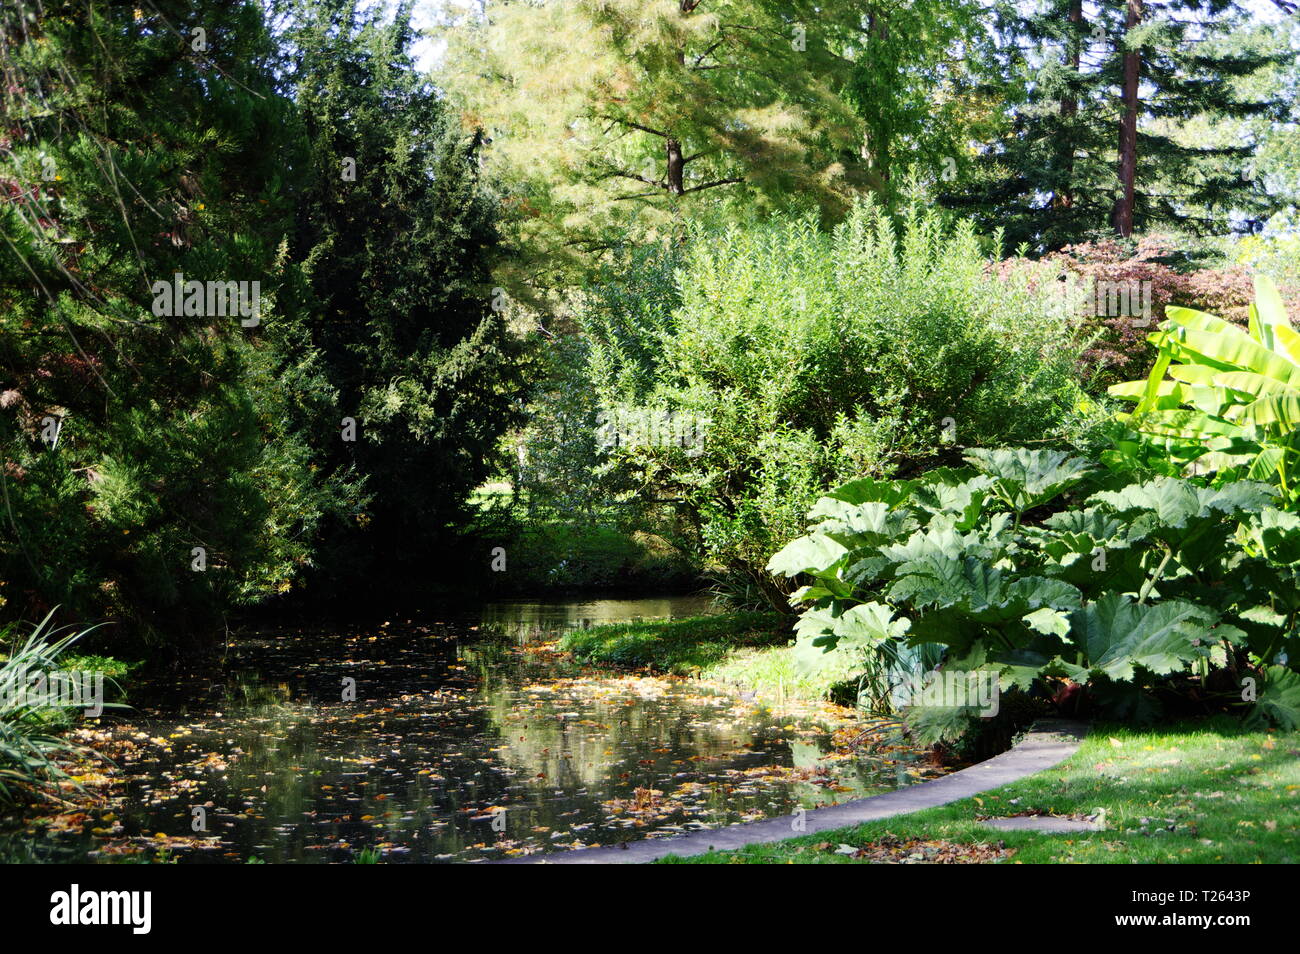 idyllic pond with abundant vegetation Stock Photo